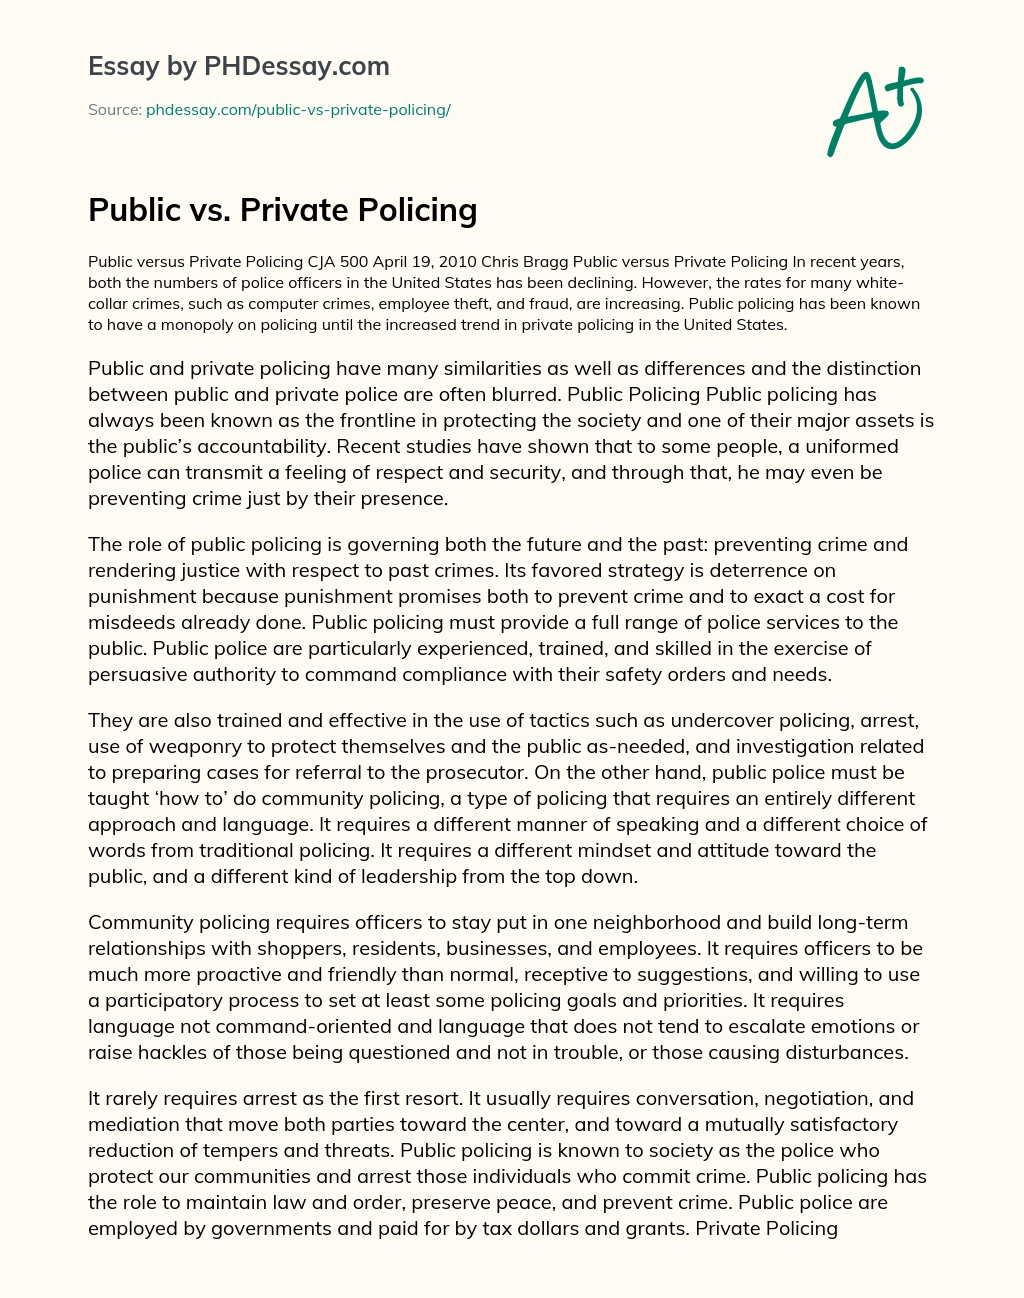 Public vs. Private Policing essay